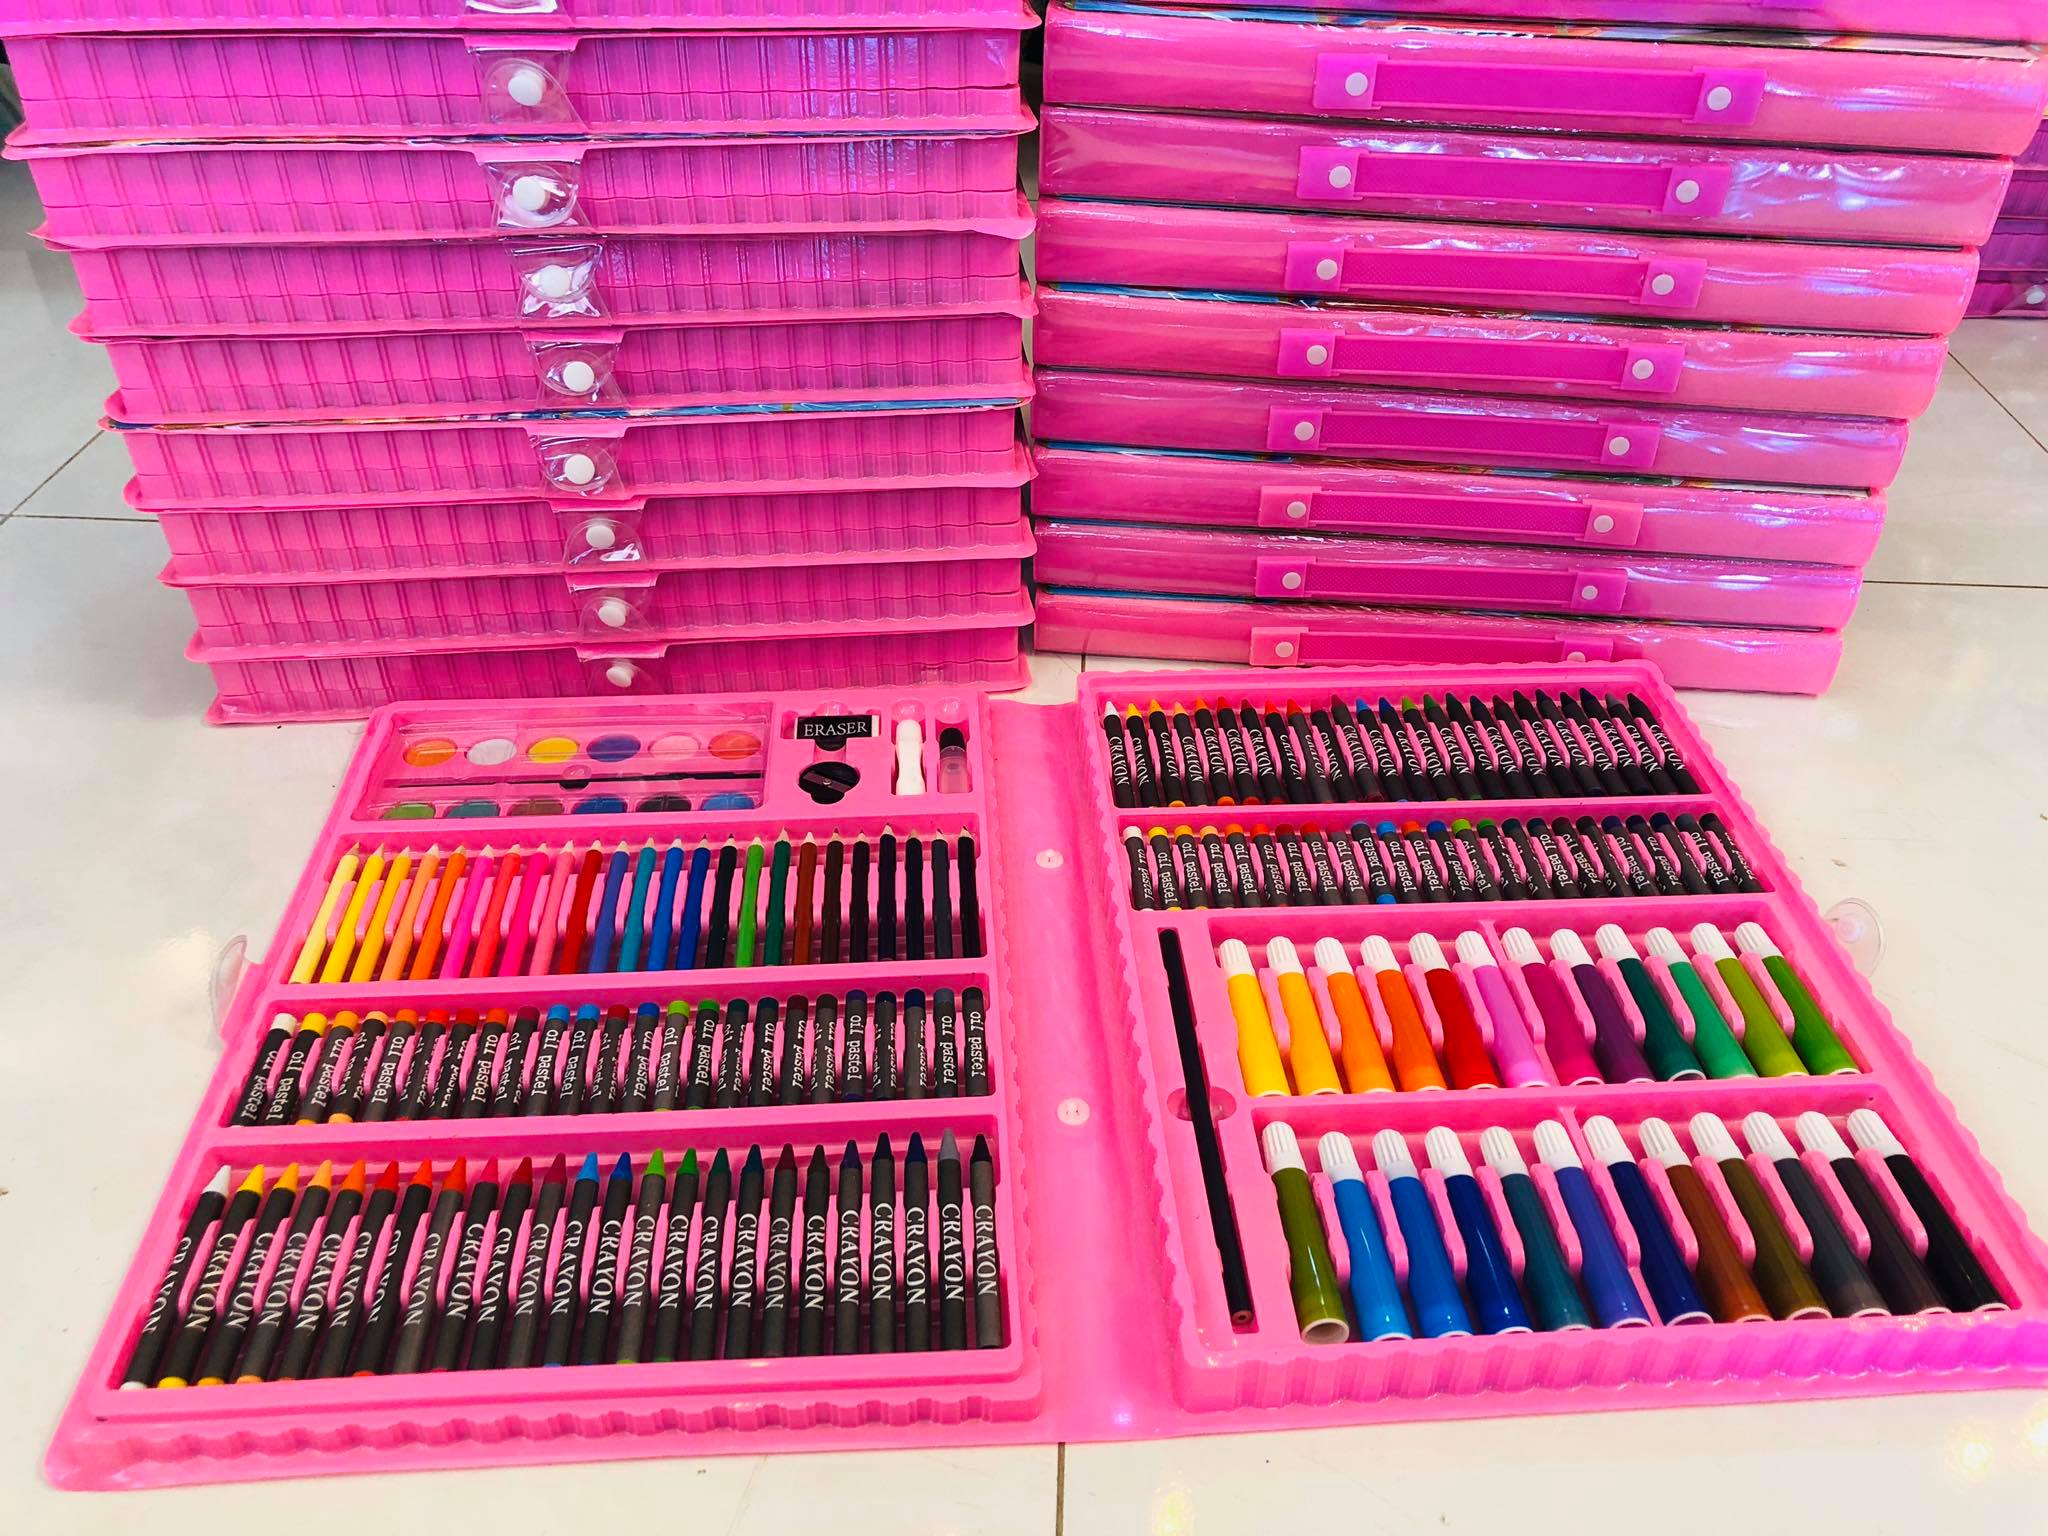 ชุดระบายสีเซ็ทใหญ่ 168 ชิ้นสีชมพู แถมสมุดภาพระบายสีฟรี1เล่มฟรีสี สีไม้ สีน้ำ สีเทียน ดินสอ ยางลบ  #เครื่องเขียน     สี